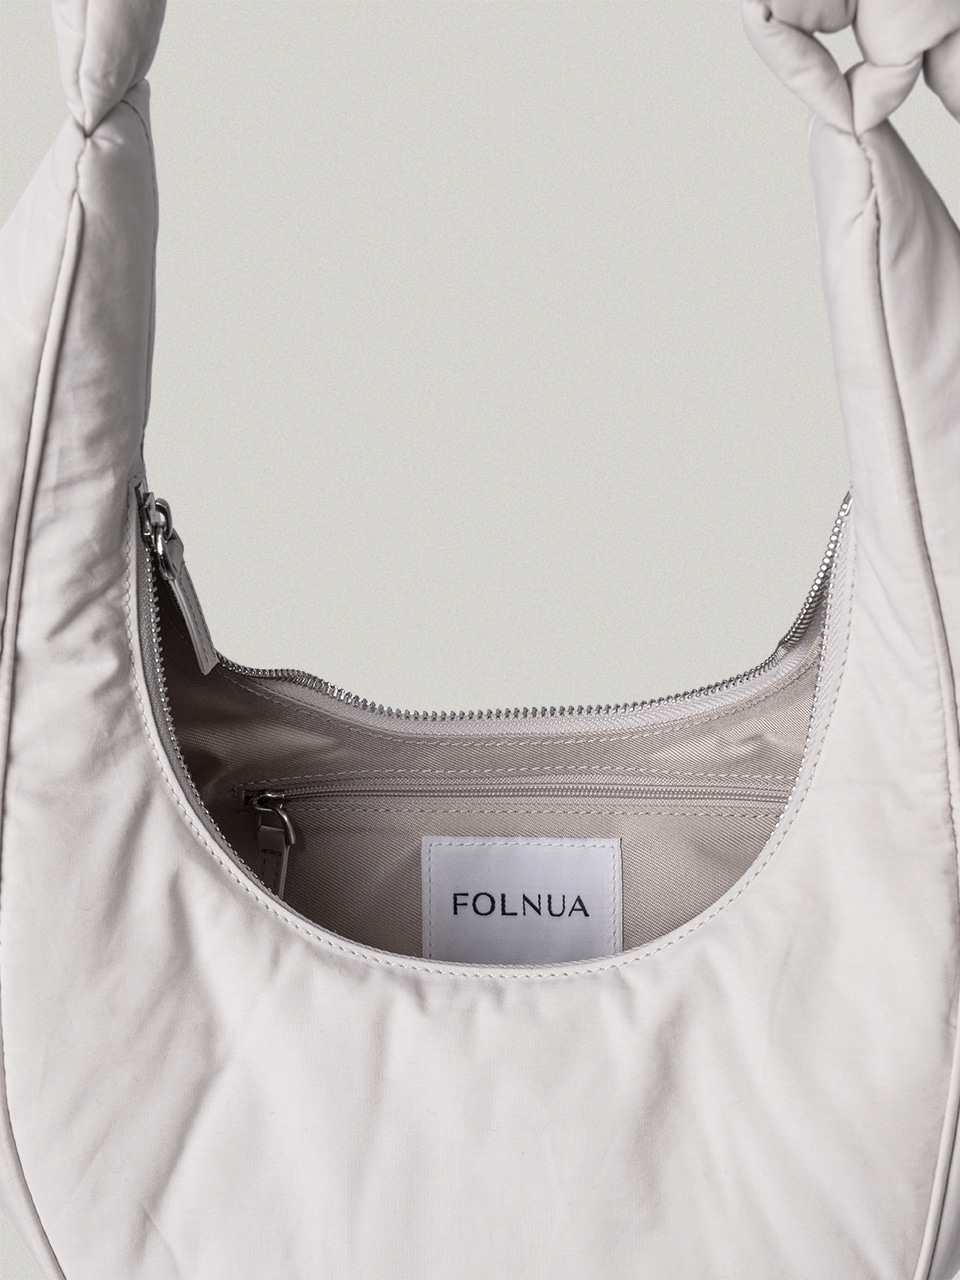 FOLNUA(フォルニュア) オーバルバッグ ブラック プレーン - ショルダー